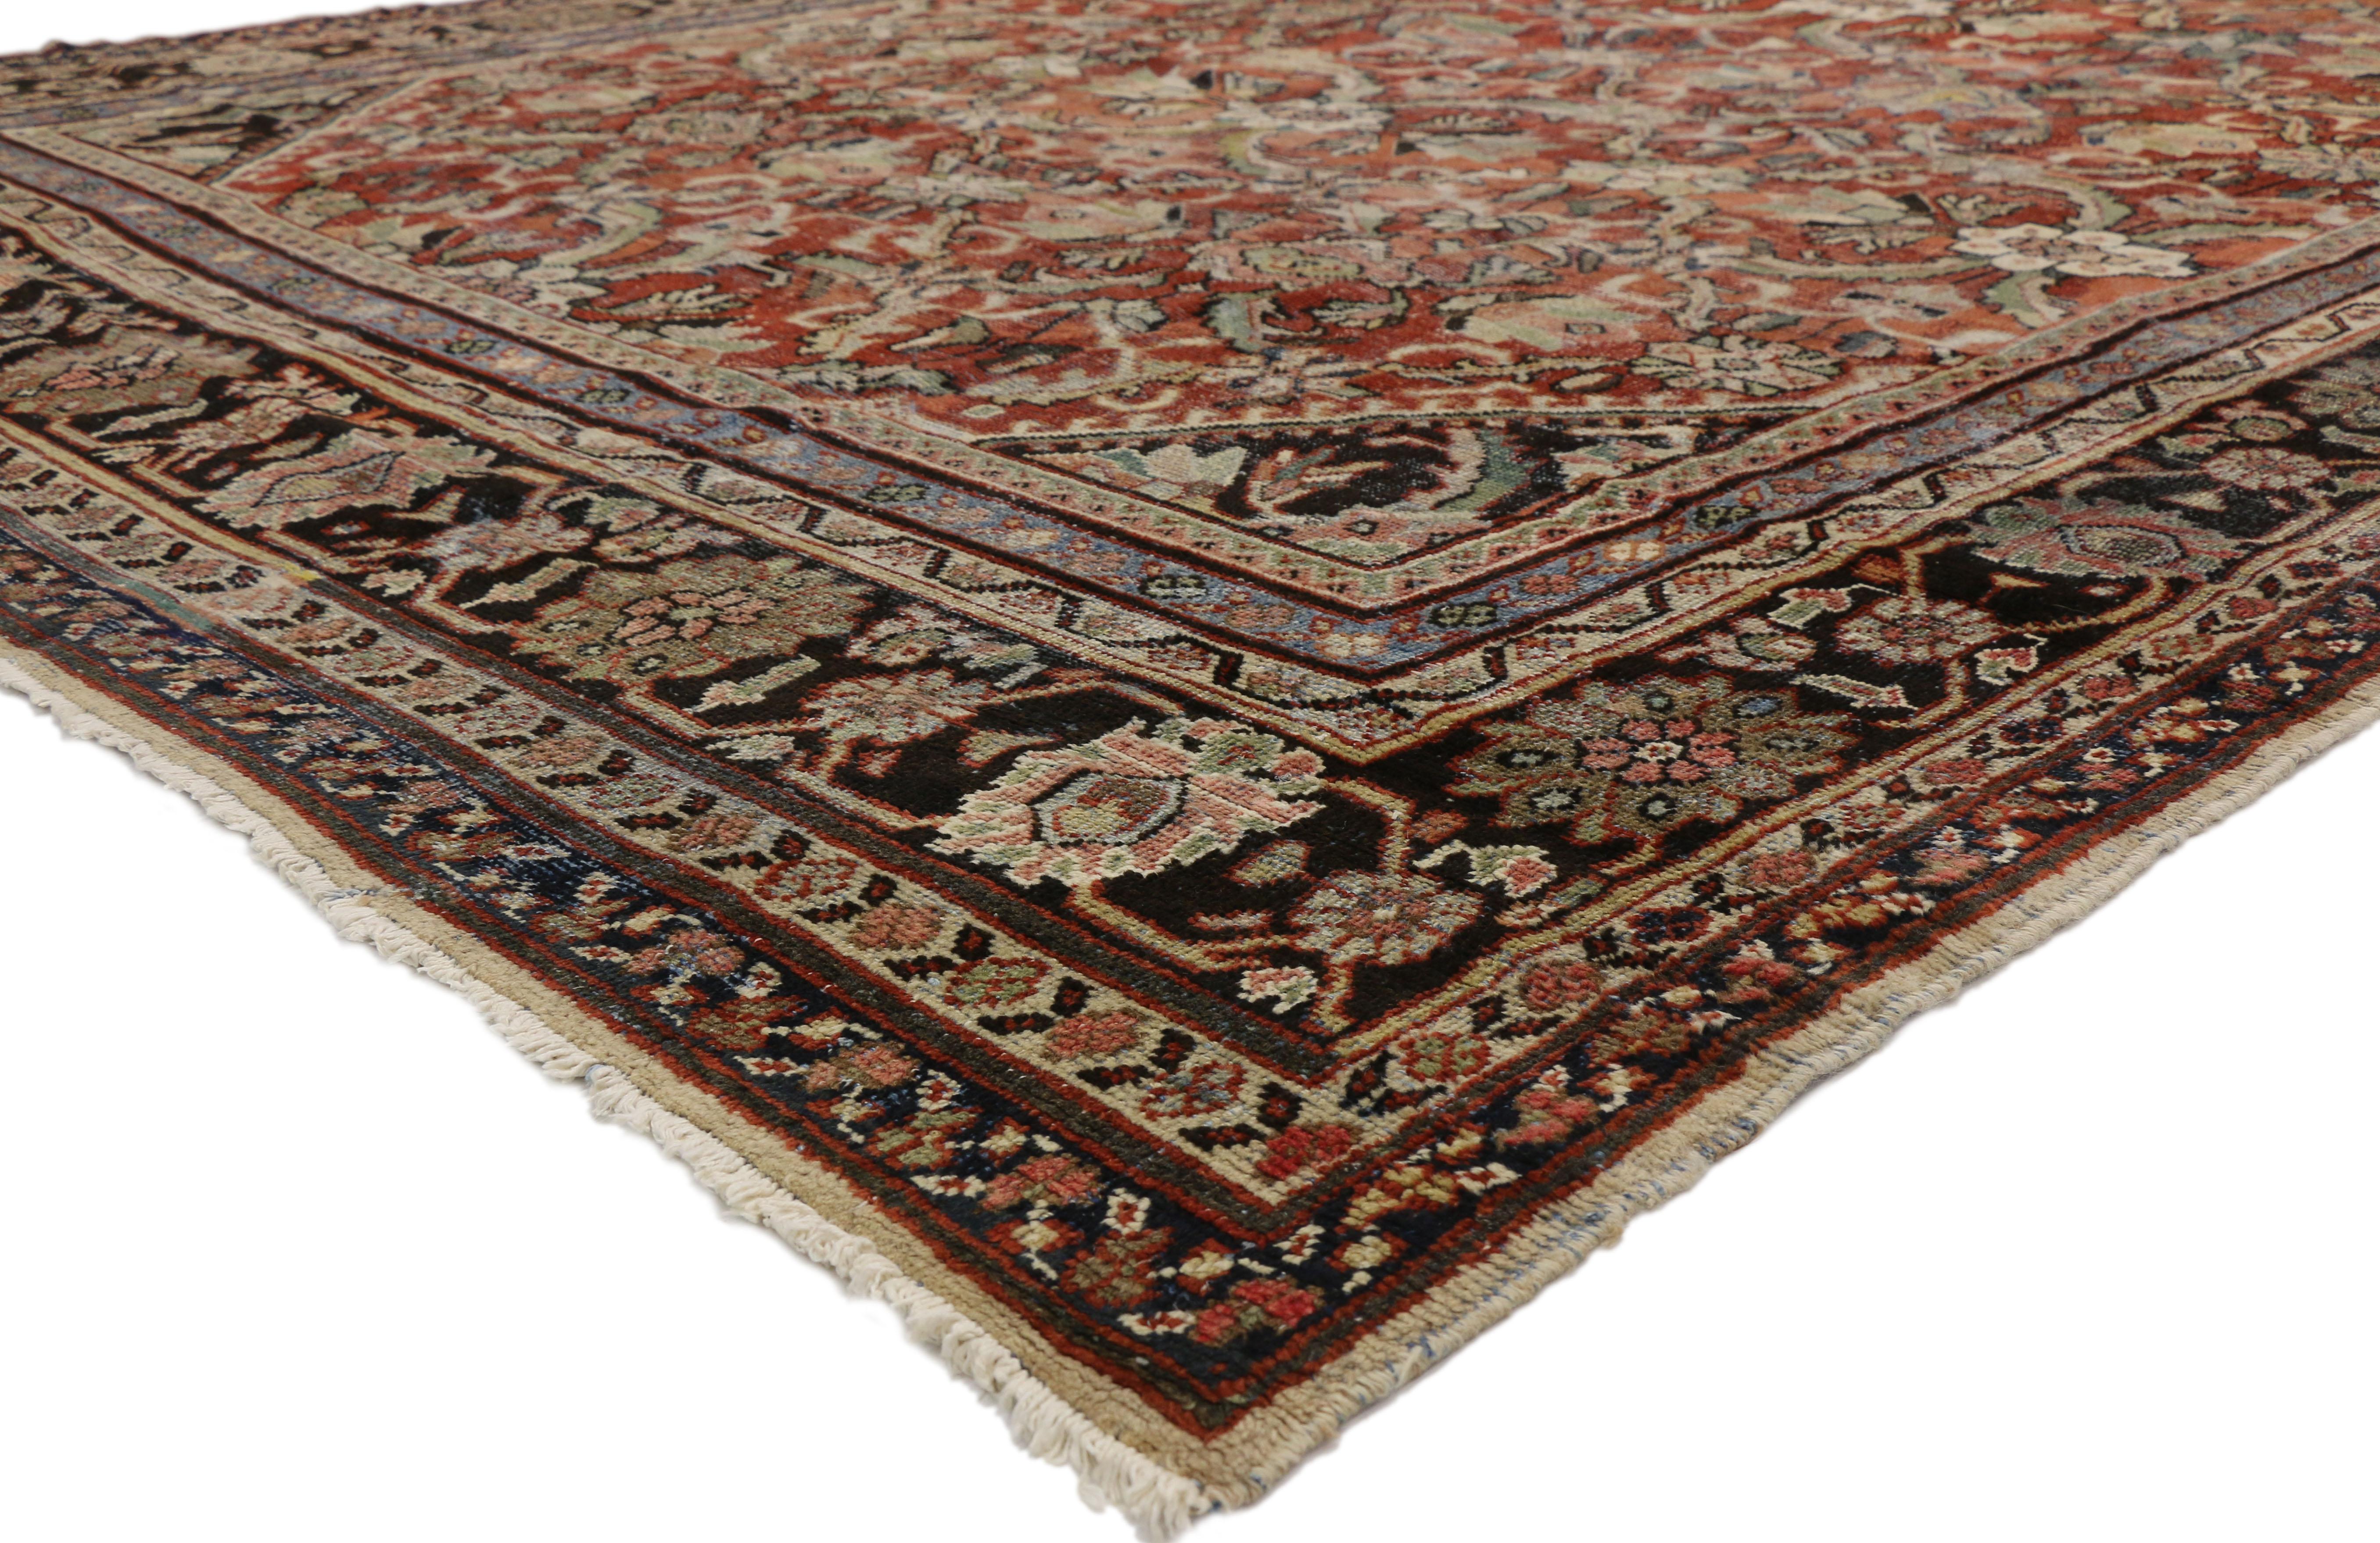 74415 Tapis Persan Vintage Distressed Mahal, 10'08 X 14'01. Les tapis persans Mahal, originaires de la région de Mahallat, dans le centre du nord-ouest de l'Iran, se caractérisent par leurs motifs géométriques audacieux, leur grande taille et leur